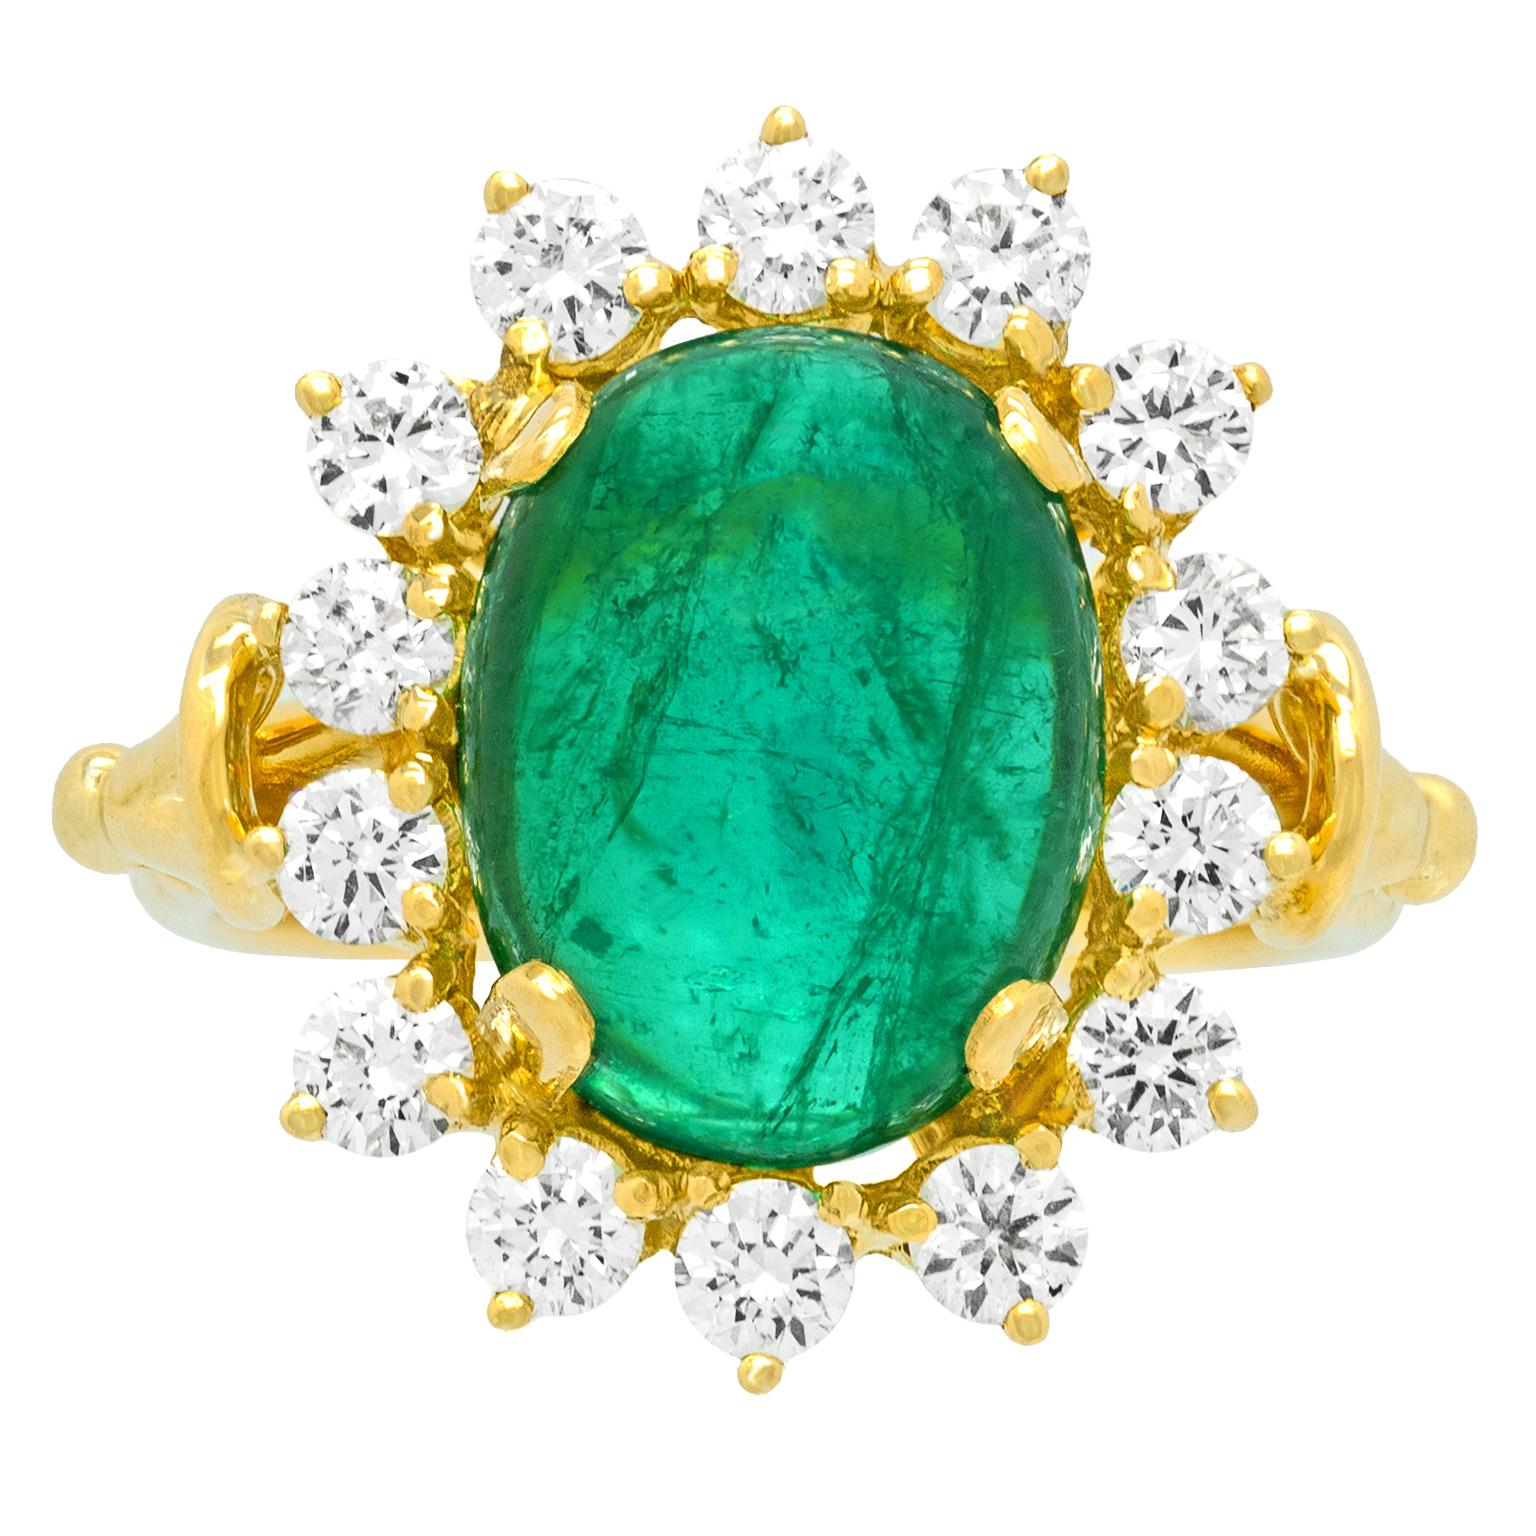 Cabochon Fabulous Emerald and Diamond Ring 18k